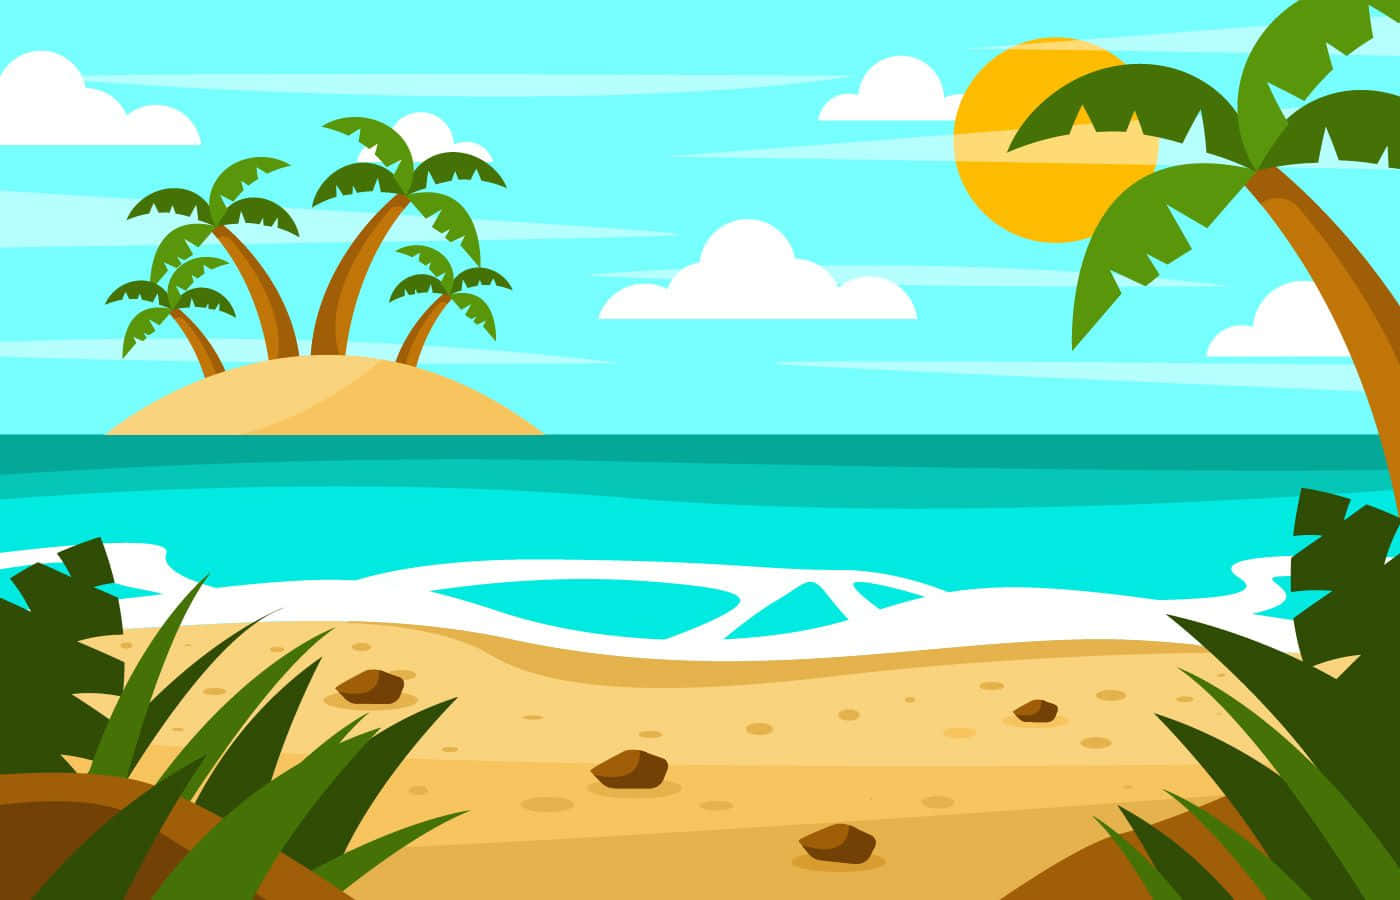 ¡diviértetebajo El Sol En La Playa De Dibujos Animados!